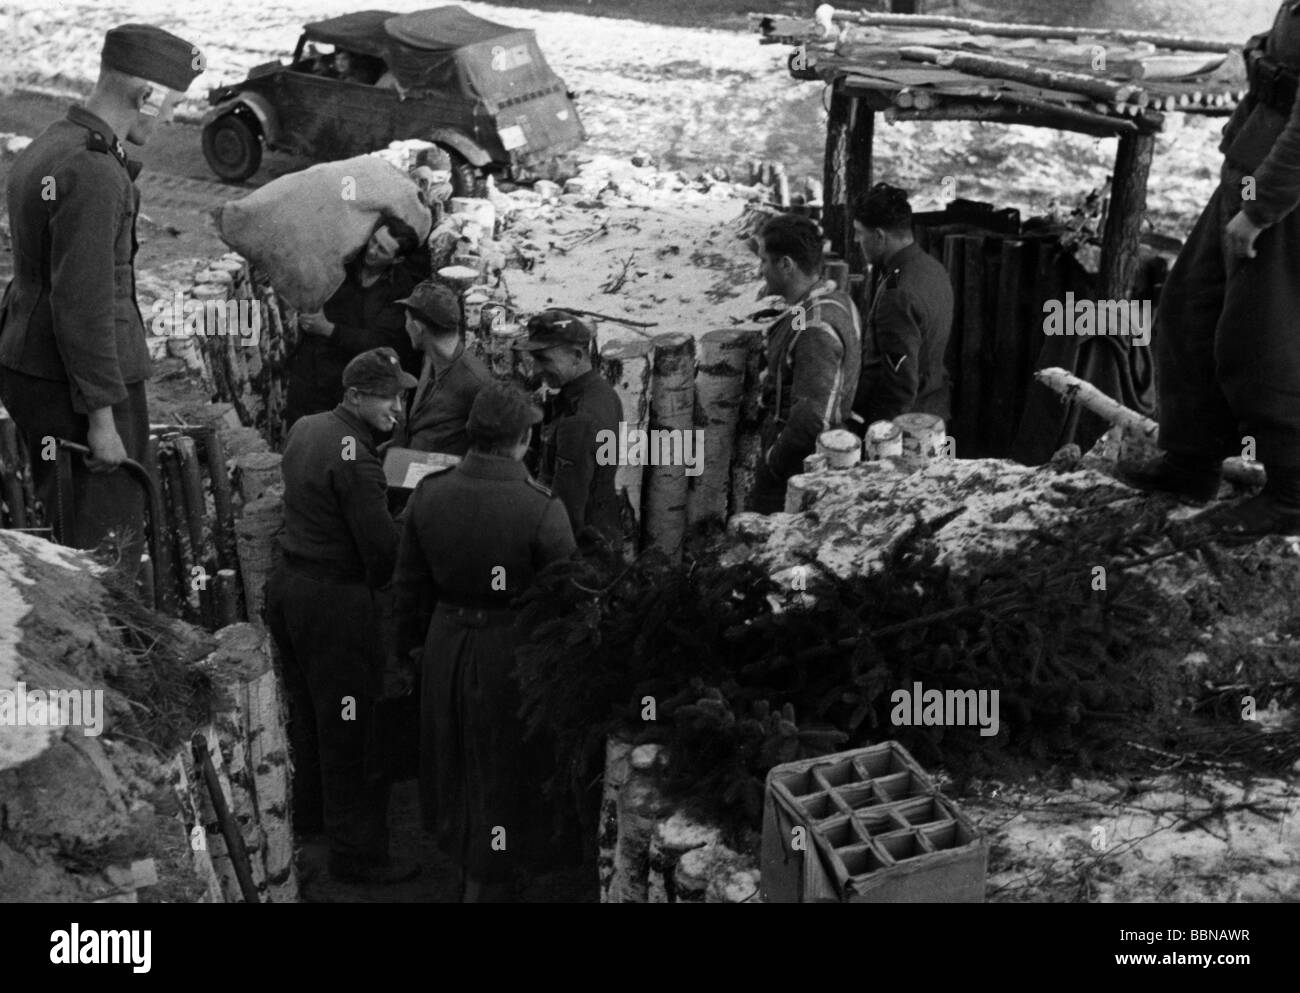 Événements, seconde Guerre mondiale / seconde Guerre mondiale, Russie 1944 / 1945, Waffen-SS soldats obtenir le courrier, Ukraine, hiver 1943 / 1944, Banque D'Images